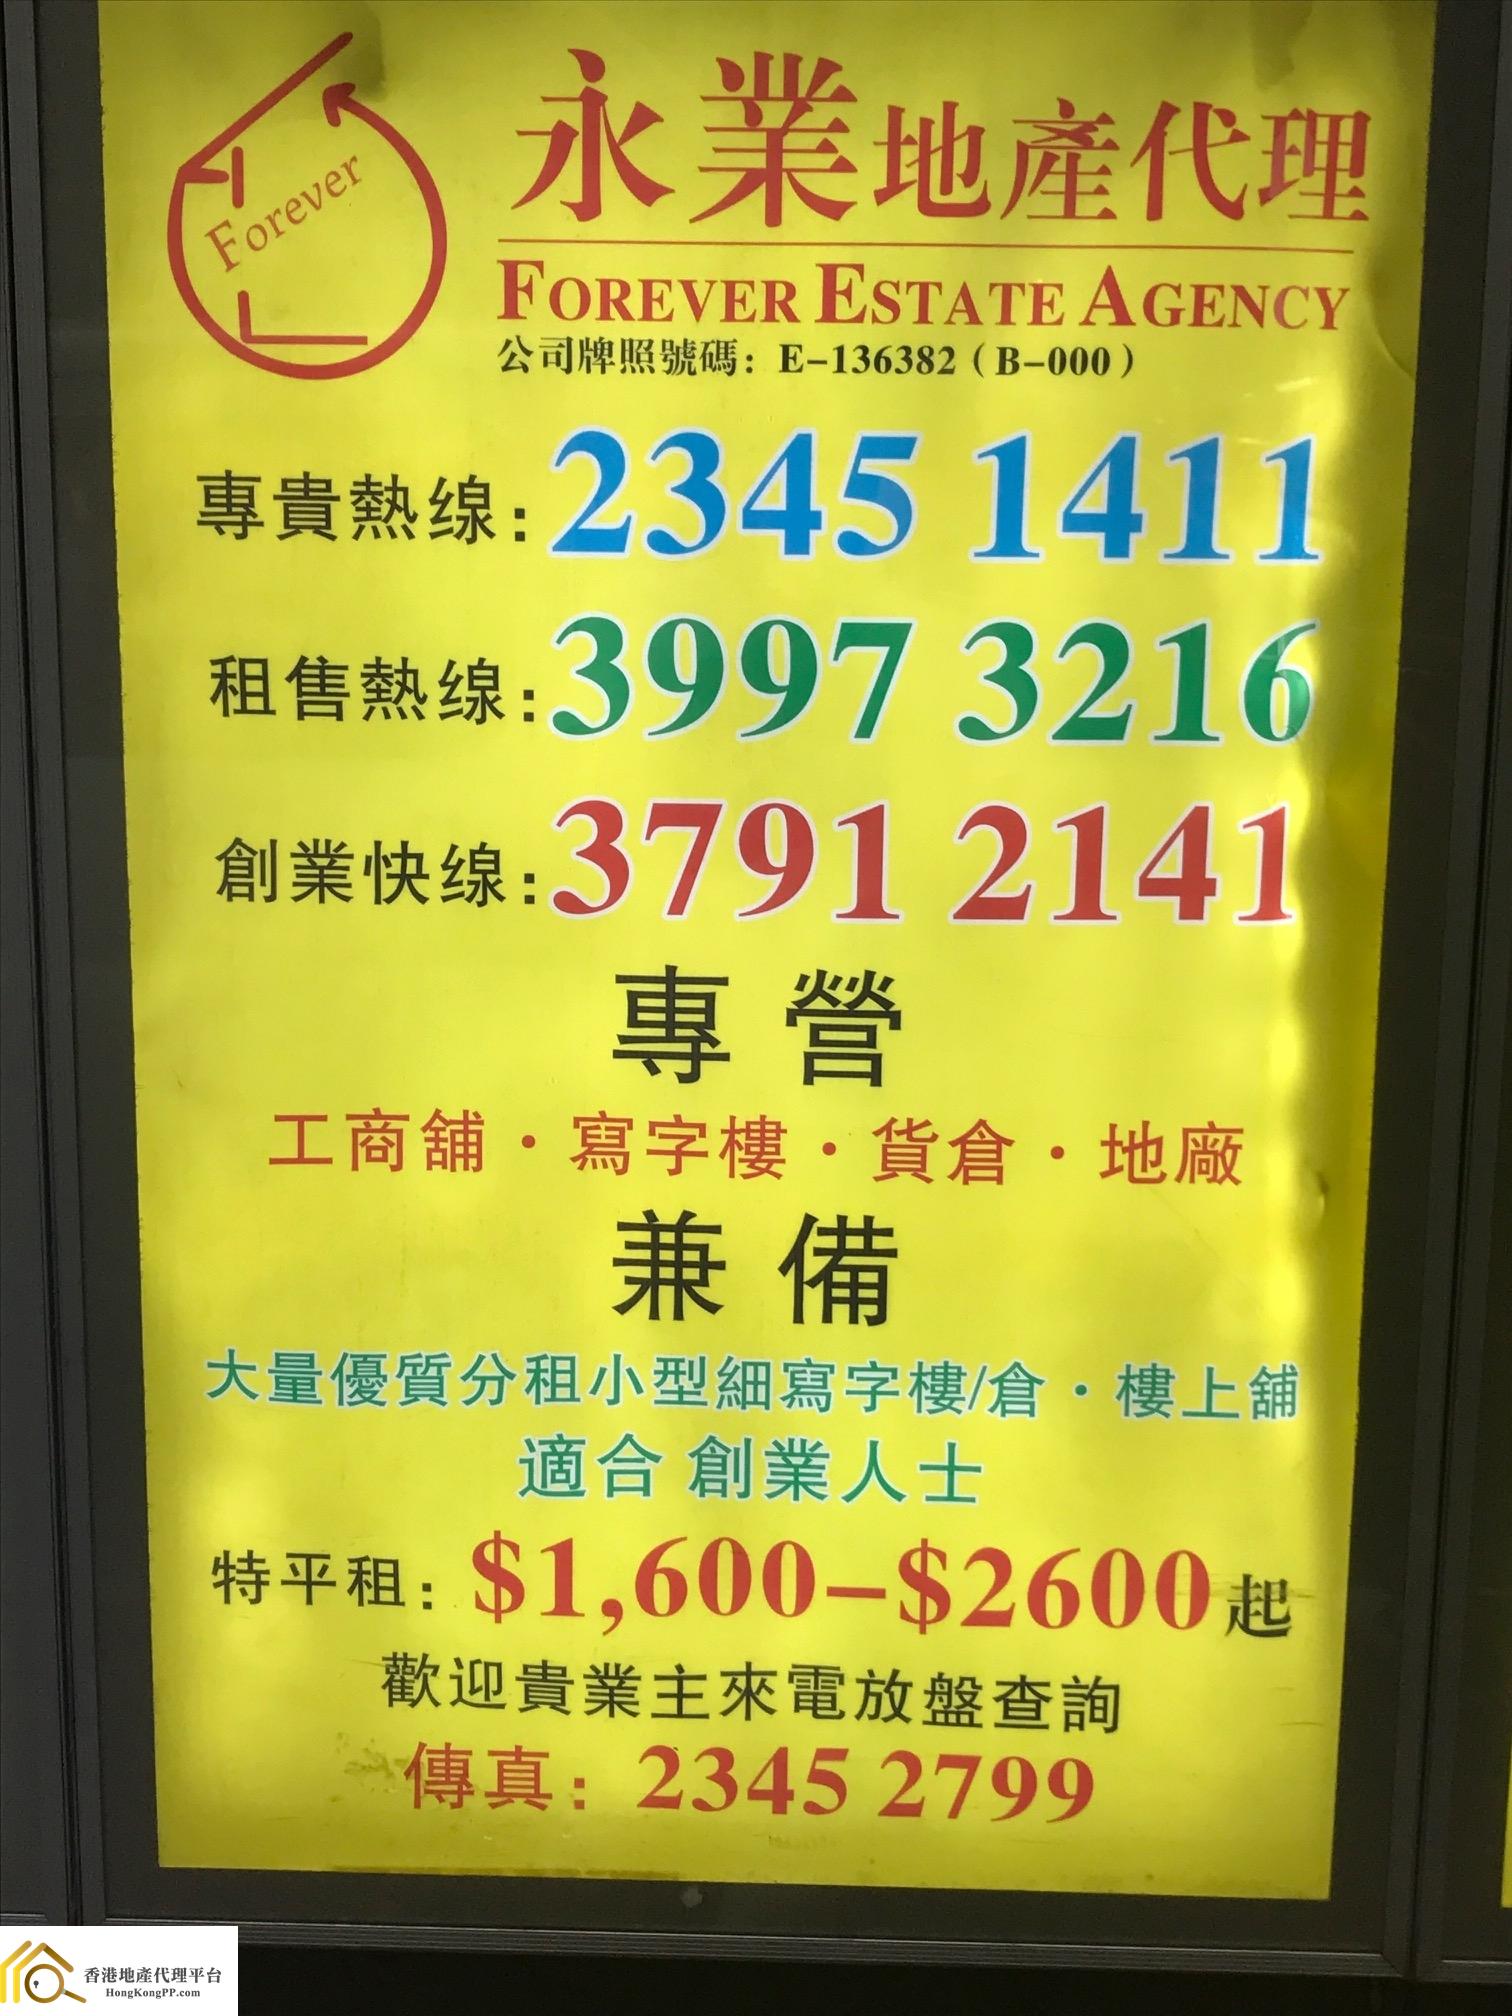 地產代理公司: 永業地產代理 Forever Estate Agency 